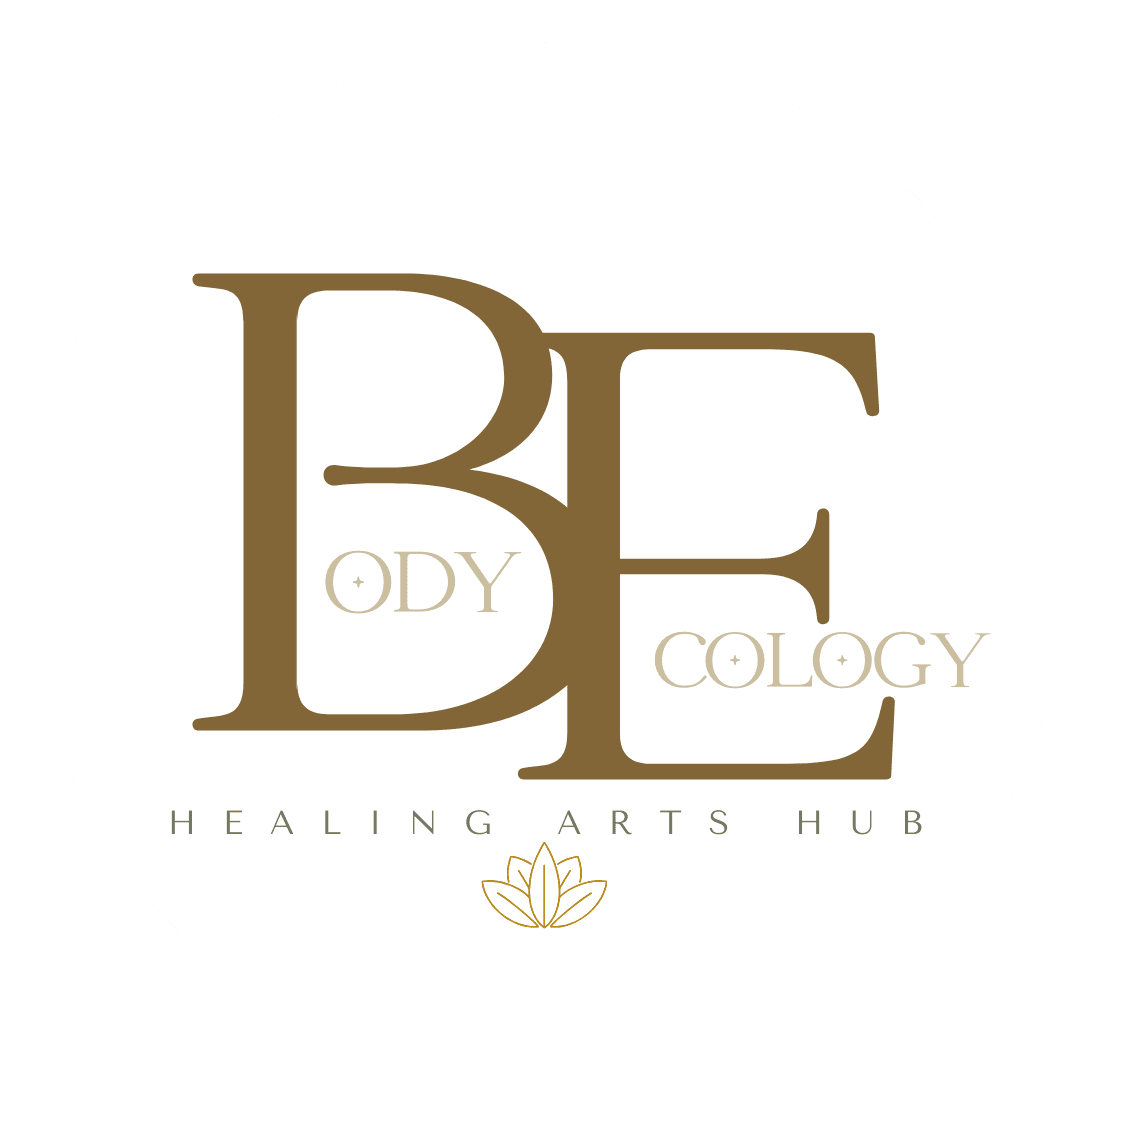 Body Ecology - Therapeutic Massage and Healing Arts Hub